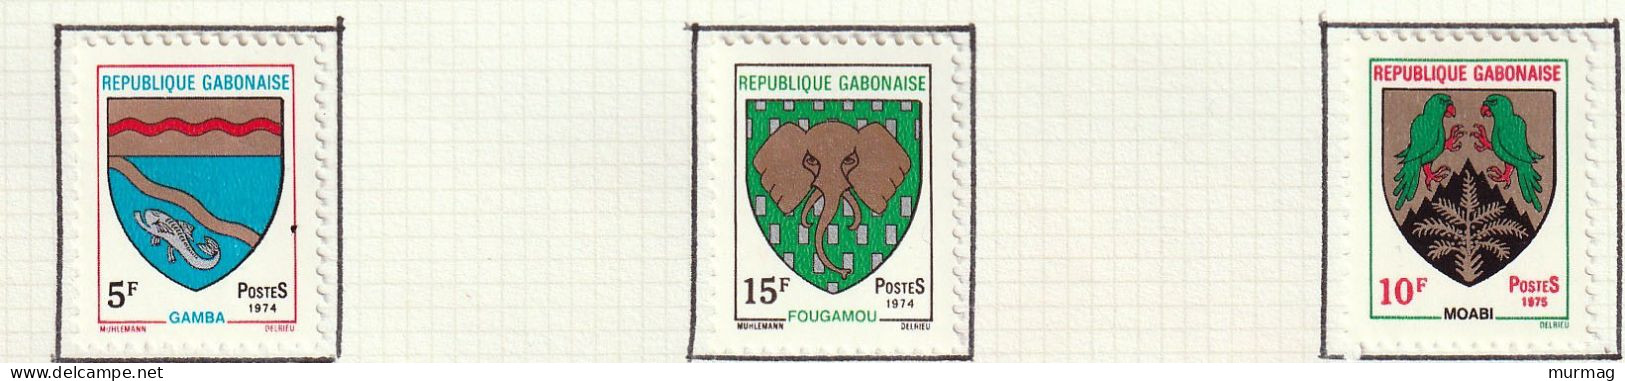 GABON - Blasons, Gamba, Fougamon, Moabi - Y&T N° 320, 322, 339 - 1973-1974 - MH - Gabon (1960-...)